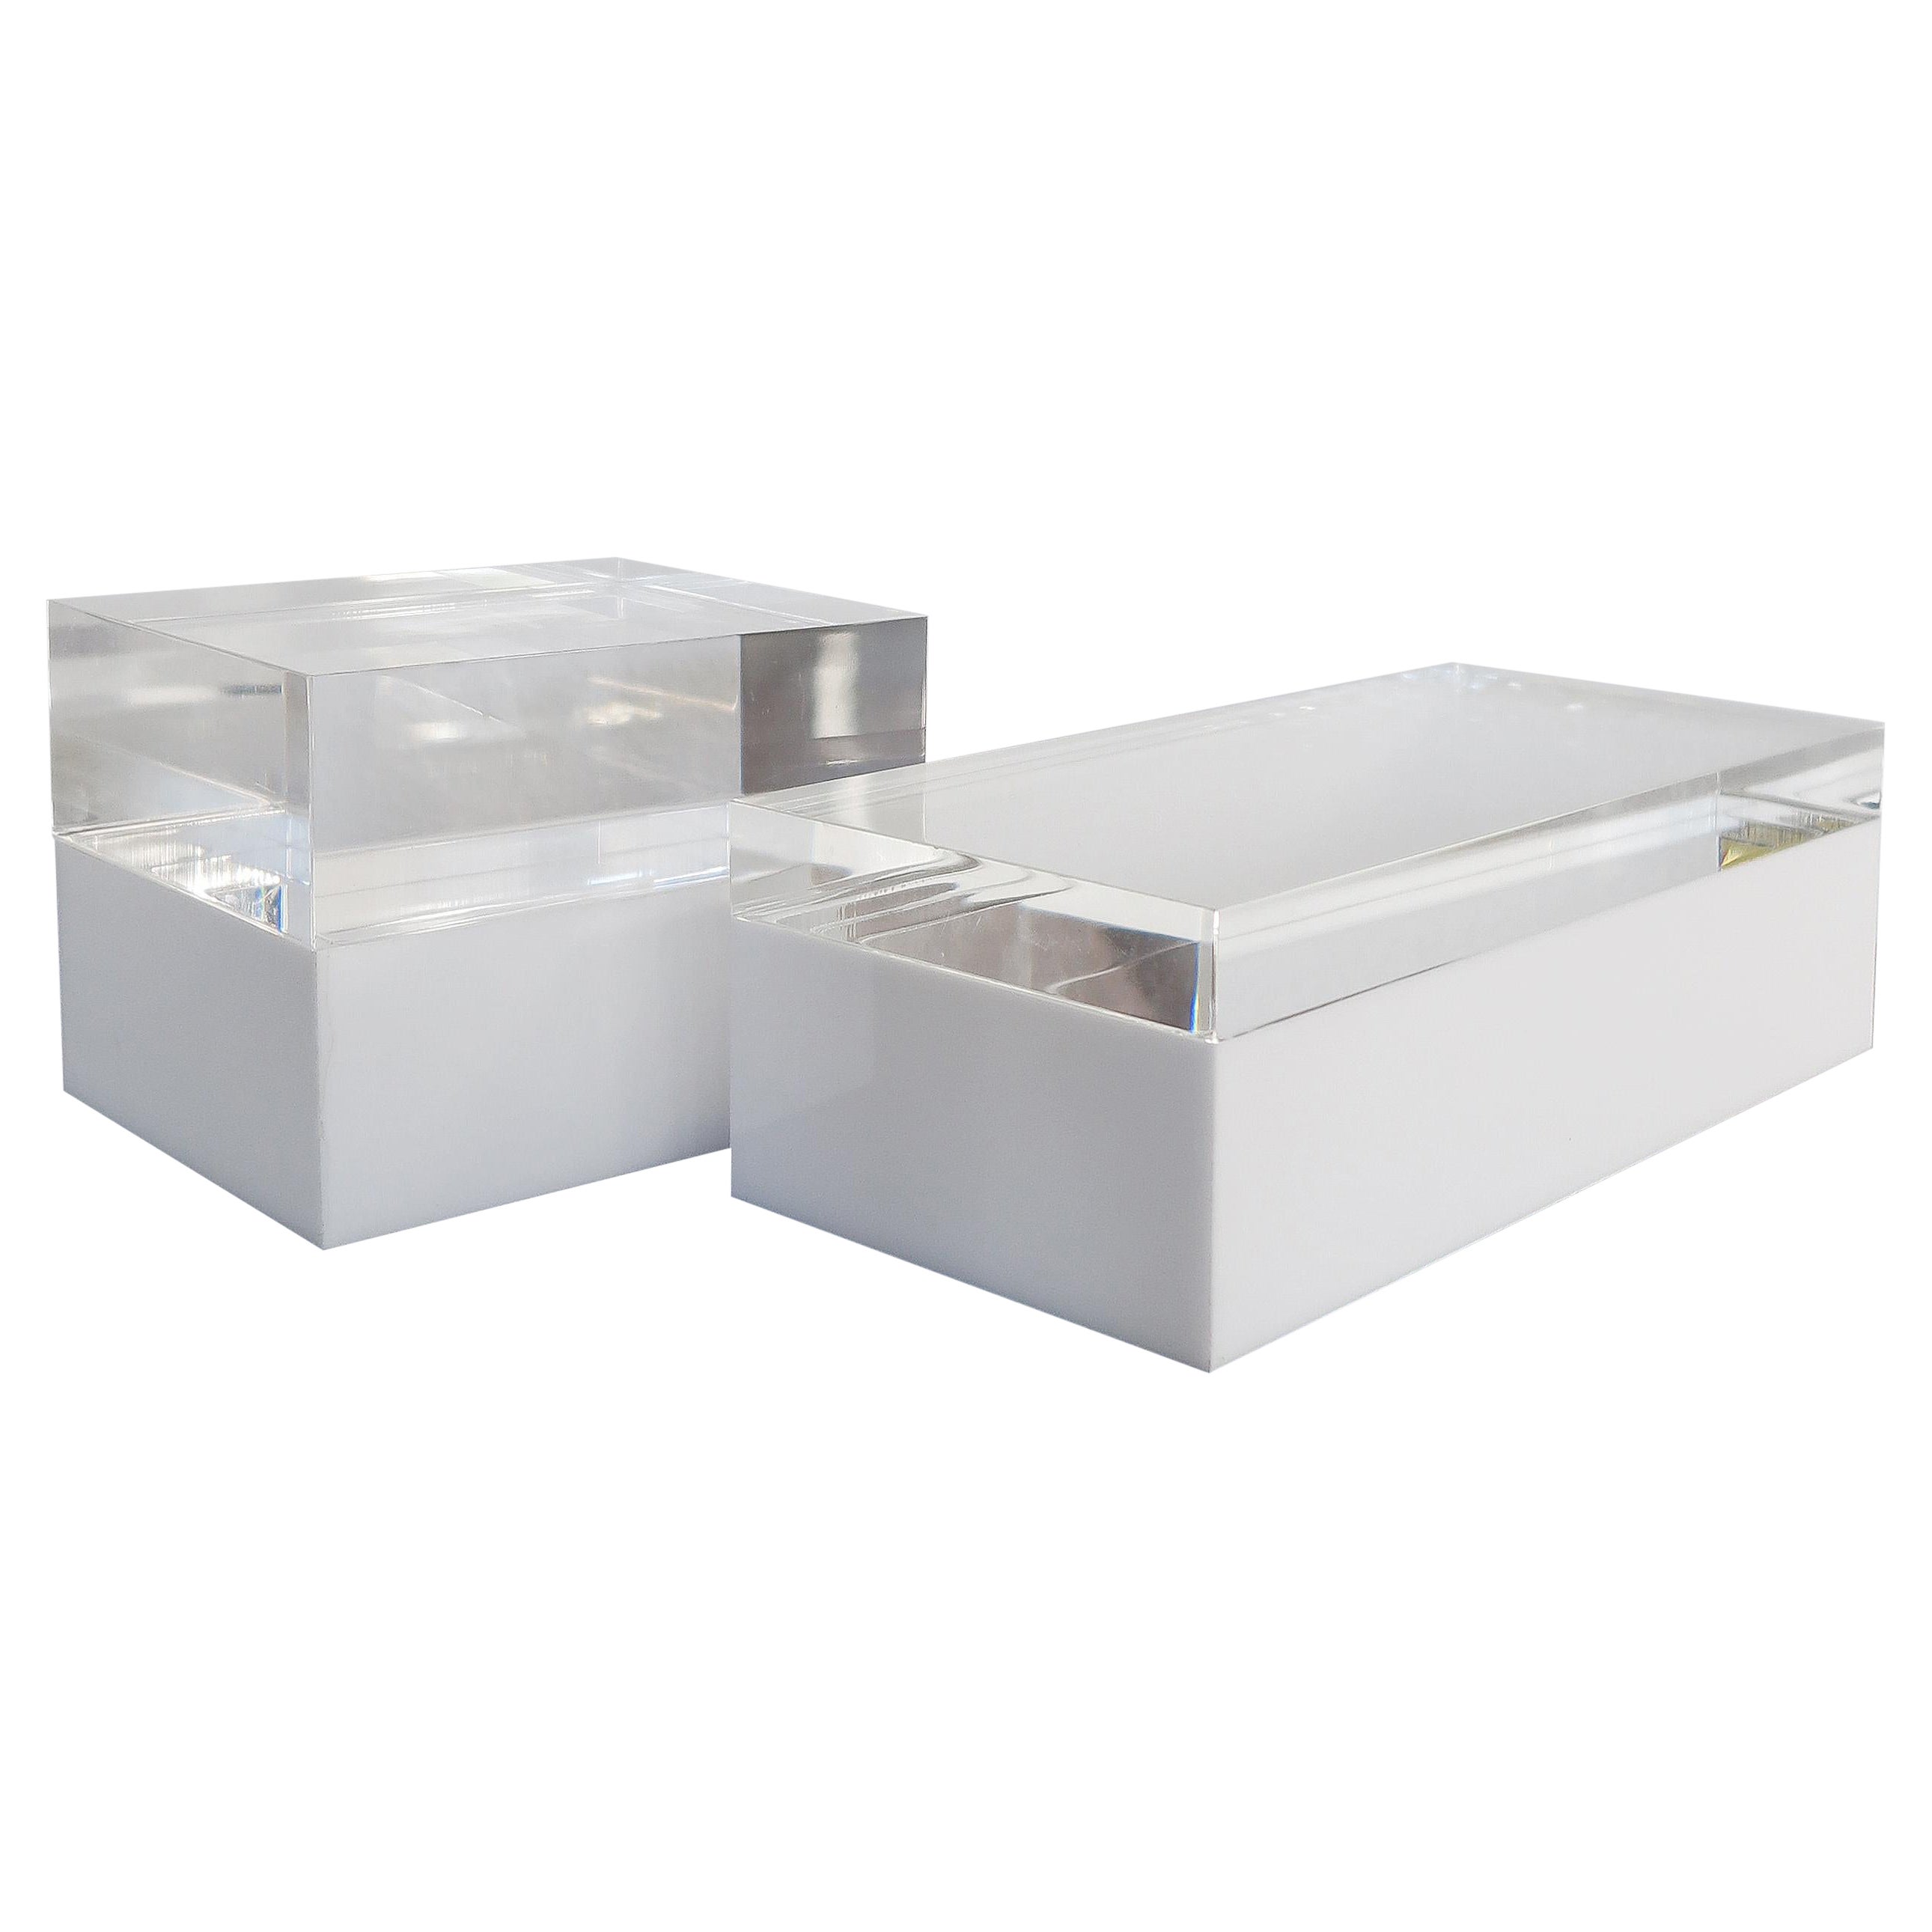 Alessandro Albrizzi Italian White Perspex Boxes 1990s For Sale